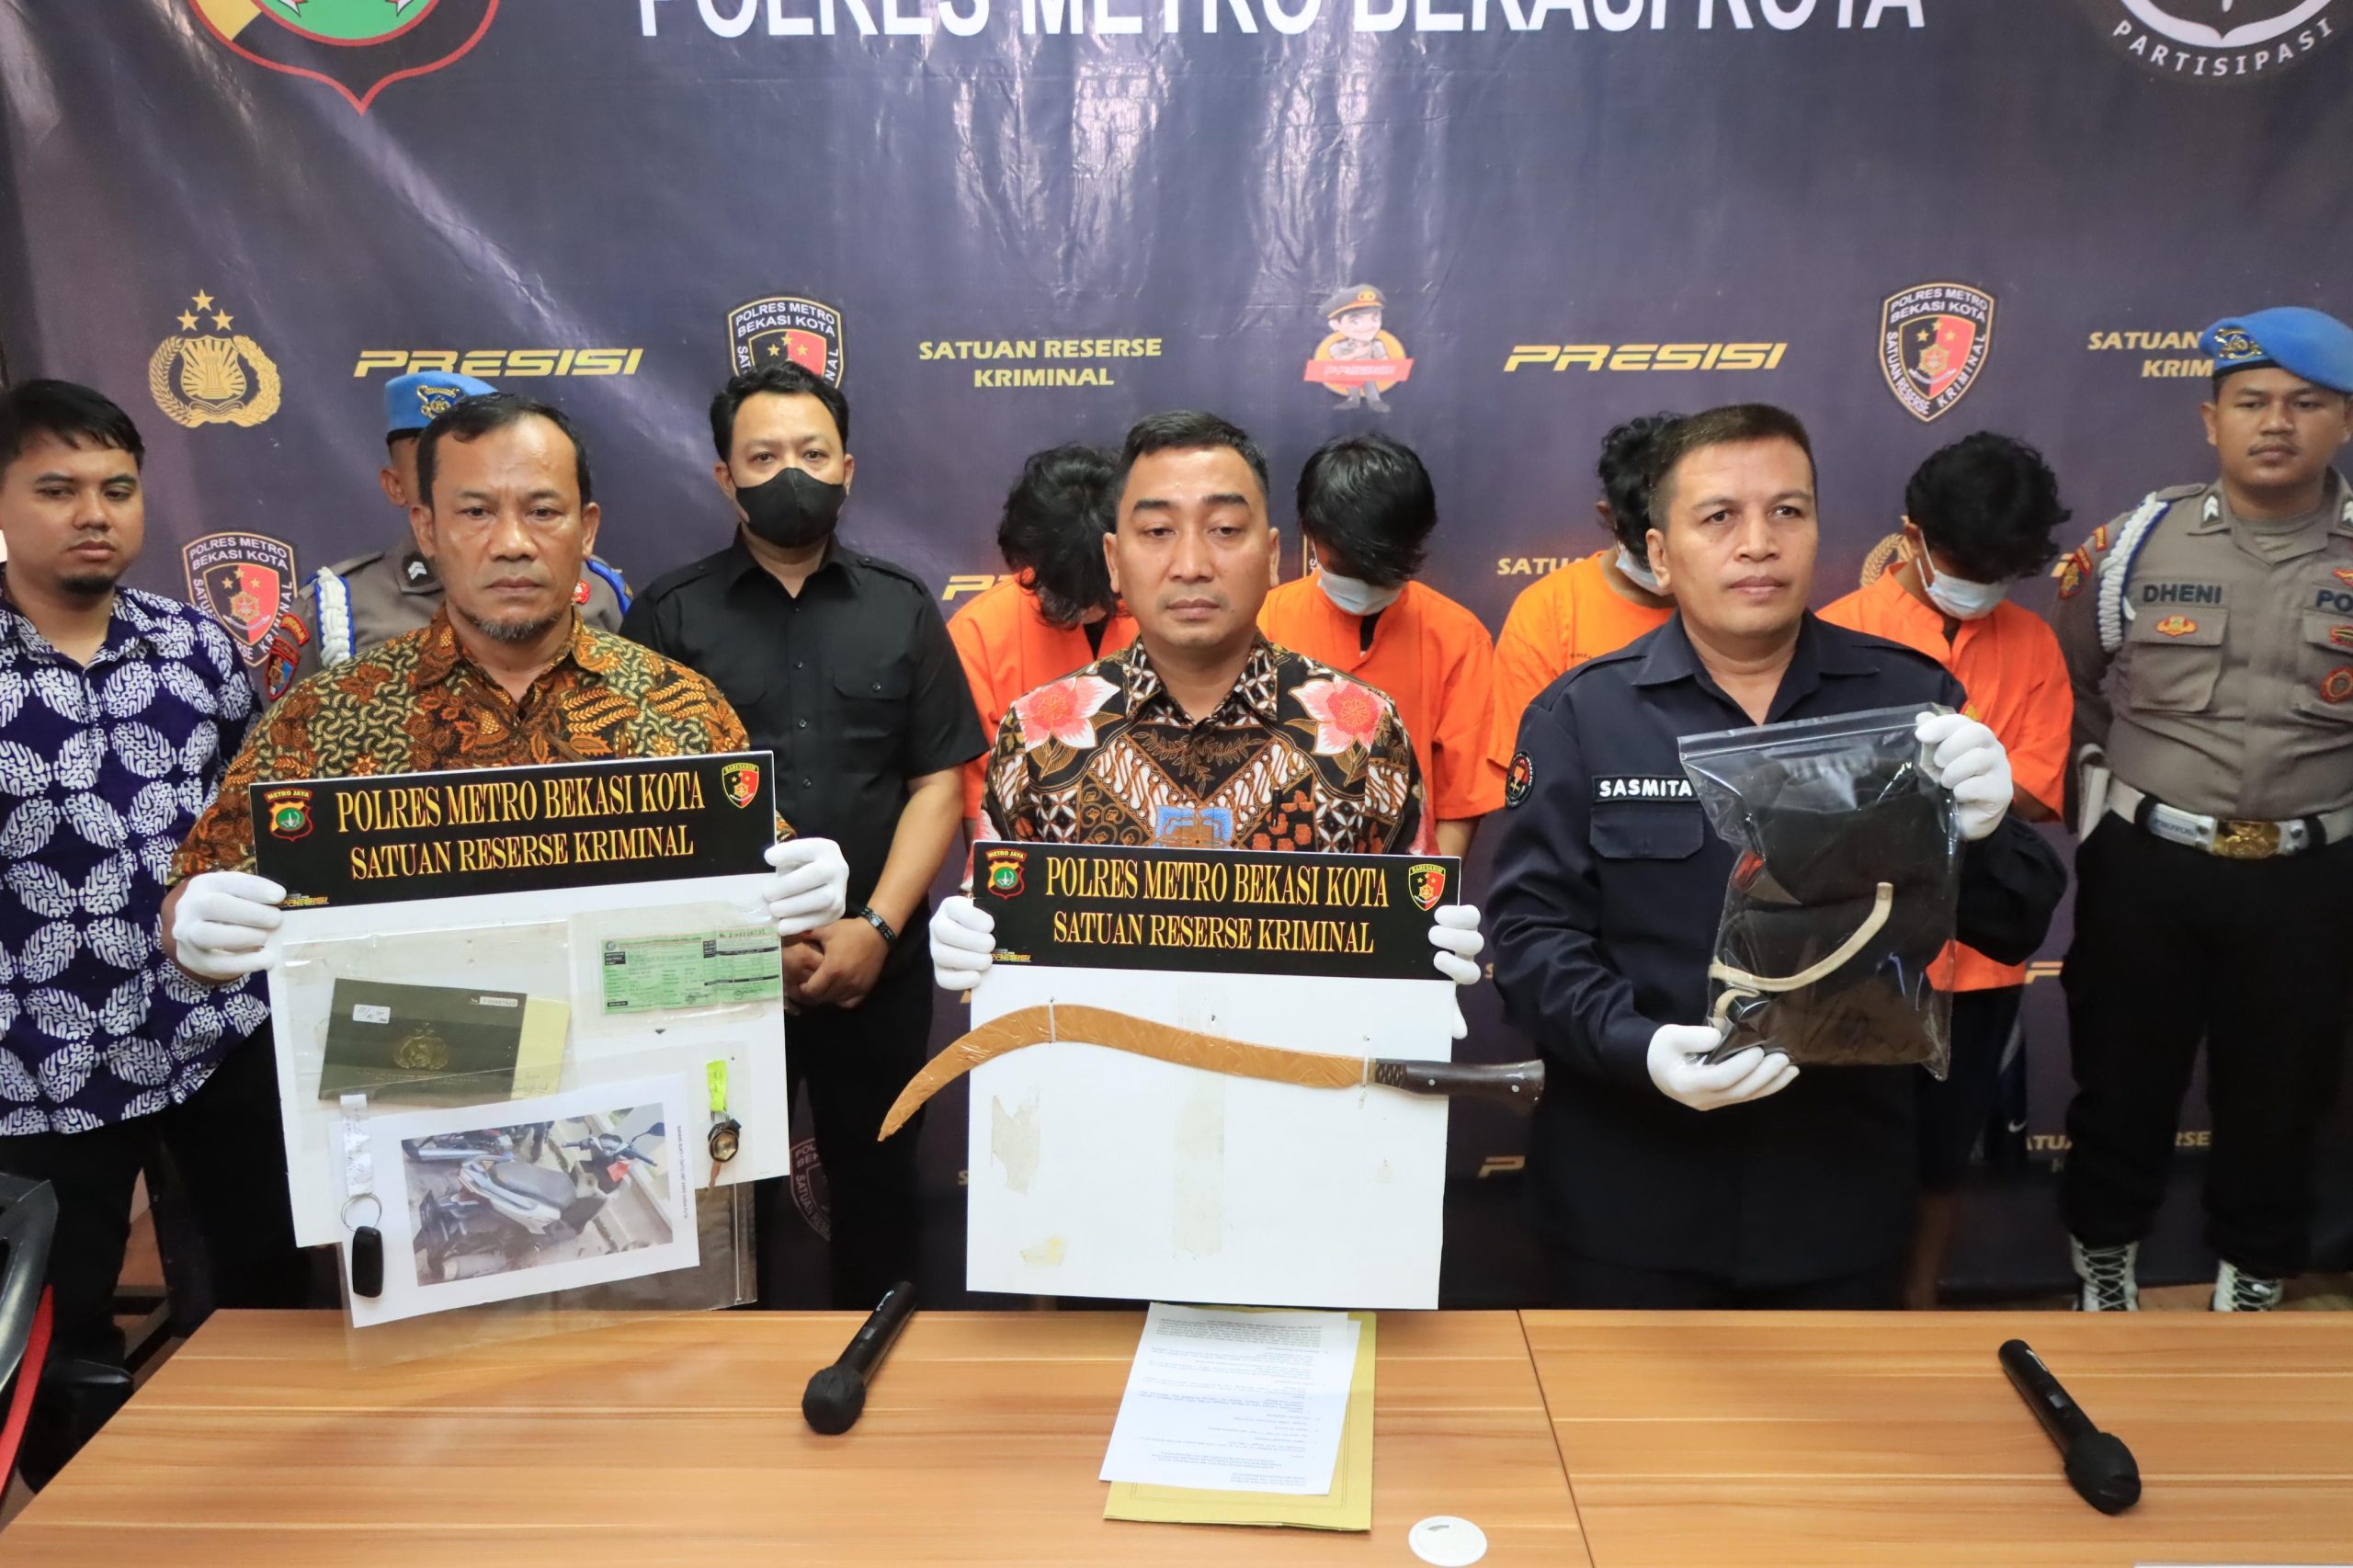 Polres Metro Bekasi Kota Ungkap Kasus Pencurian dengan Kekerasan, 4 Pelaku Ditangkap